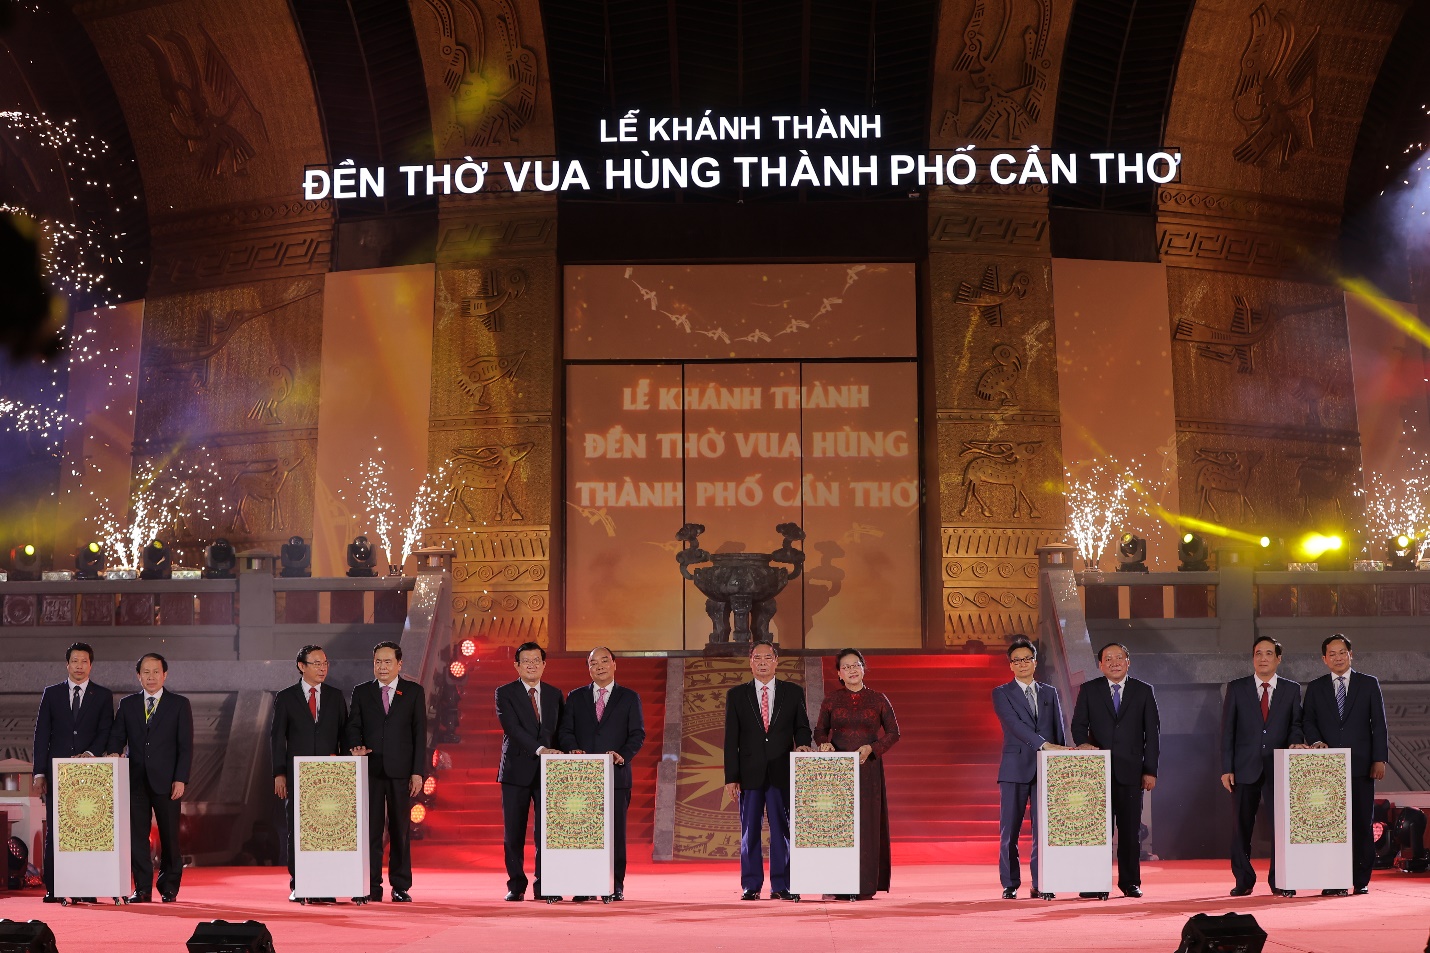 Lãnh đạo Đảng, Nhà nước tham dự Lễ khánh thành Đền thờ Vua Hùng Cần Thơ - Ảnh 1.